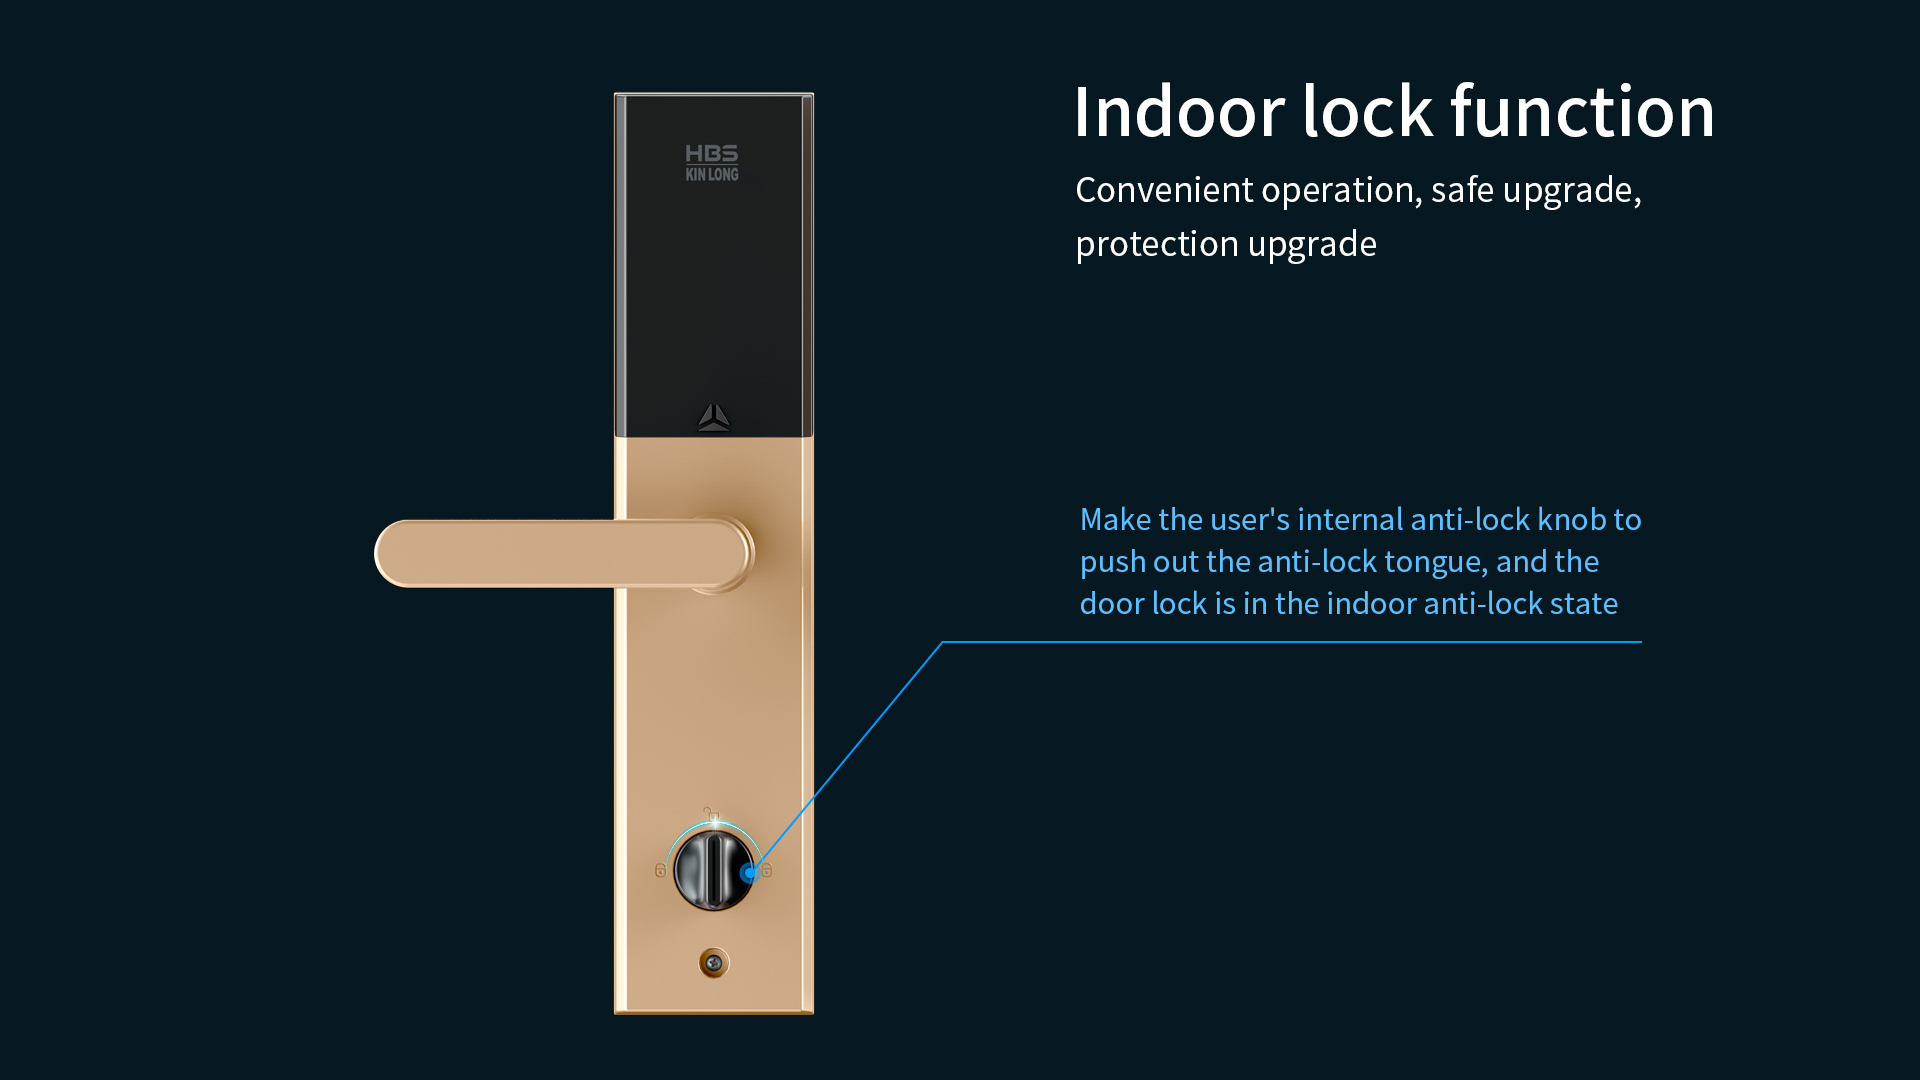 H602 Smart Doorlock